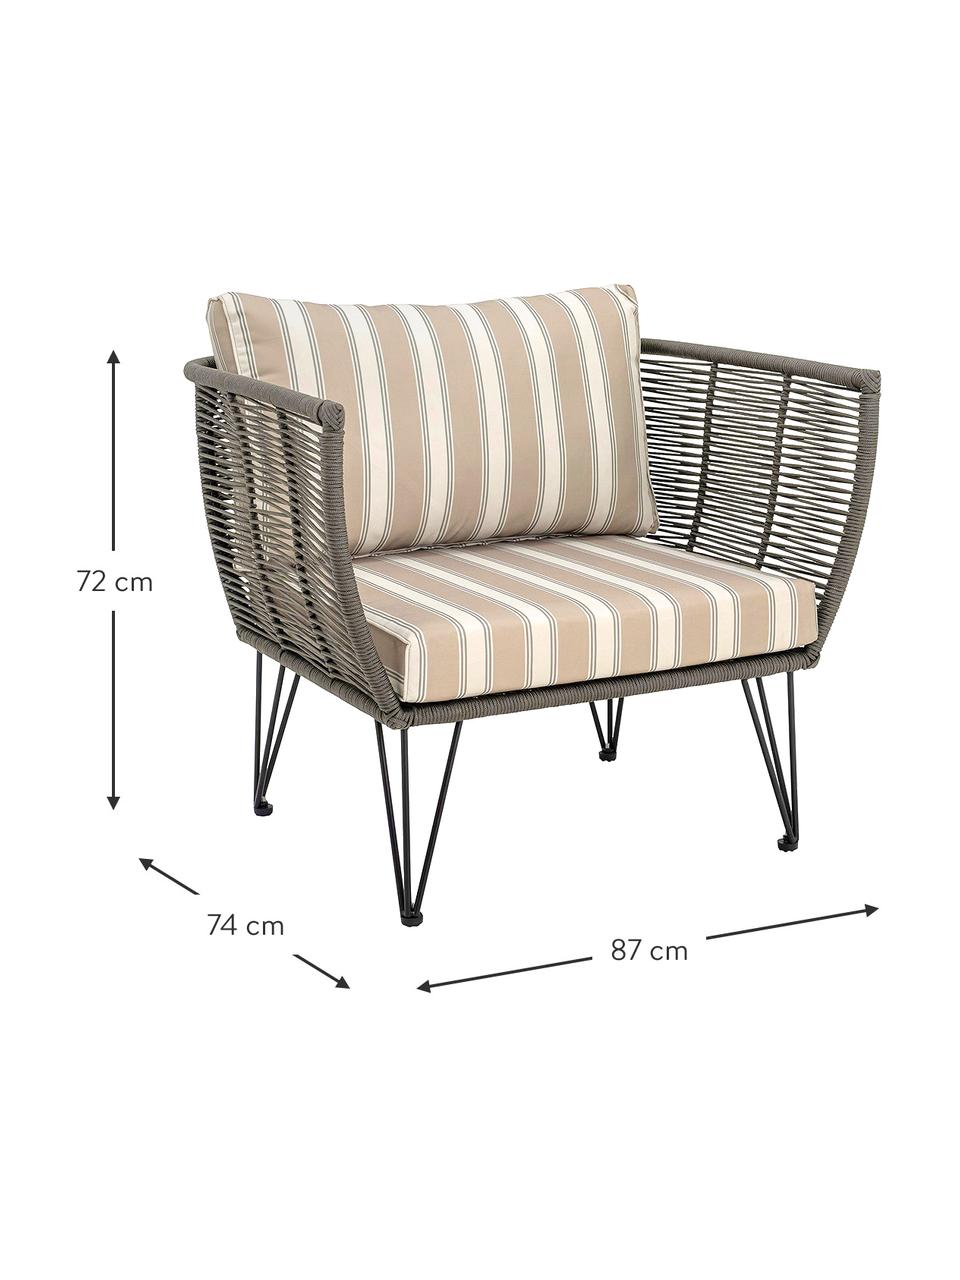 Tuin fauteuil Mundo met kunststoffen vlechtwerk, Frame: metaal, gepoedercoat, Beige, grijsgroen, B 87 x D 74 cm